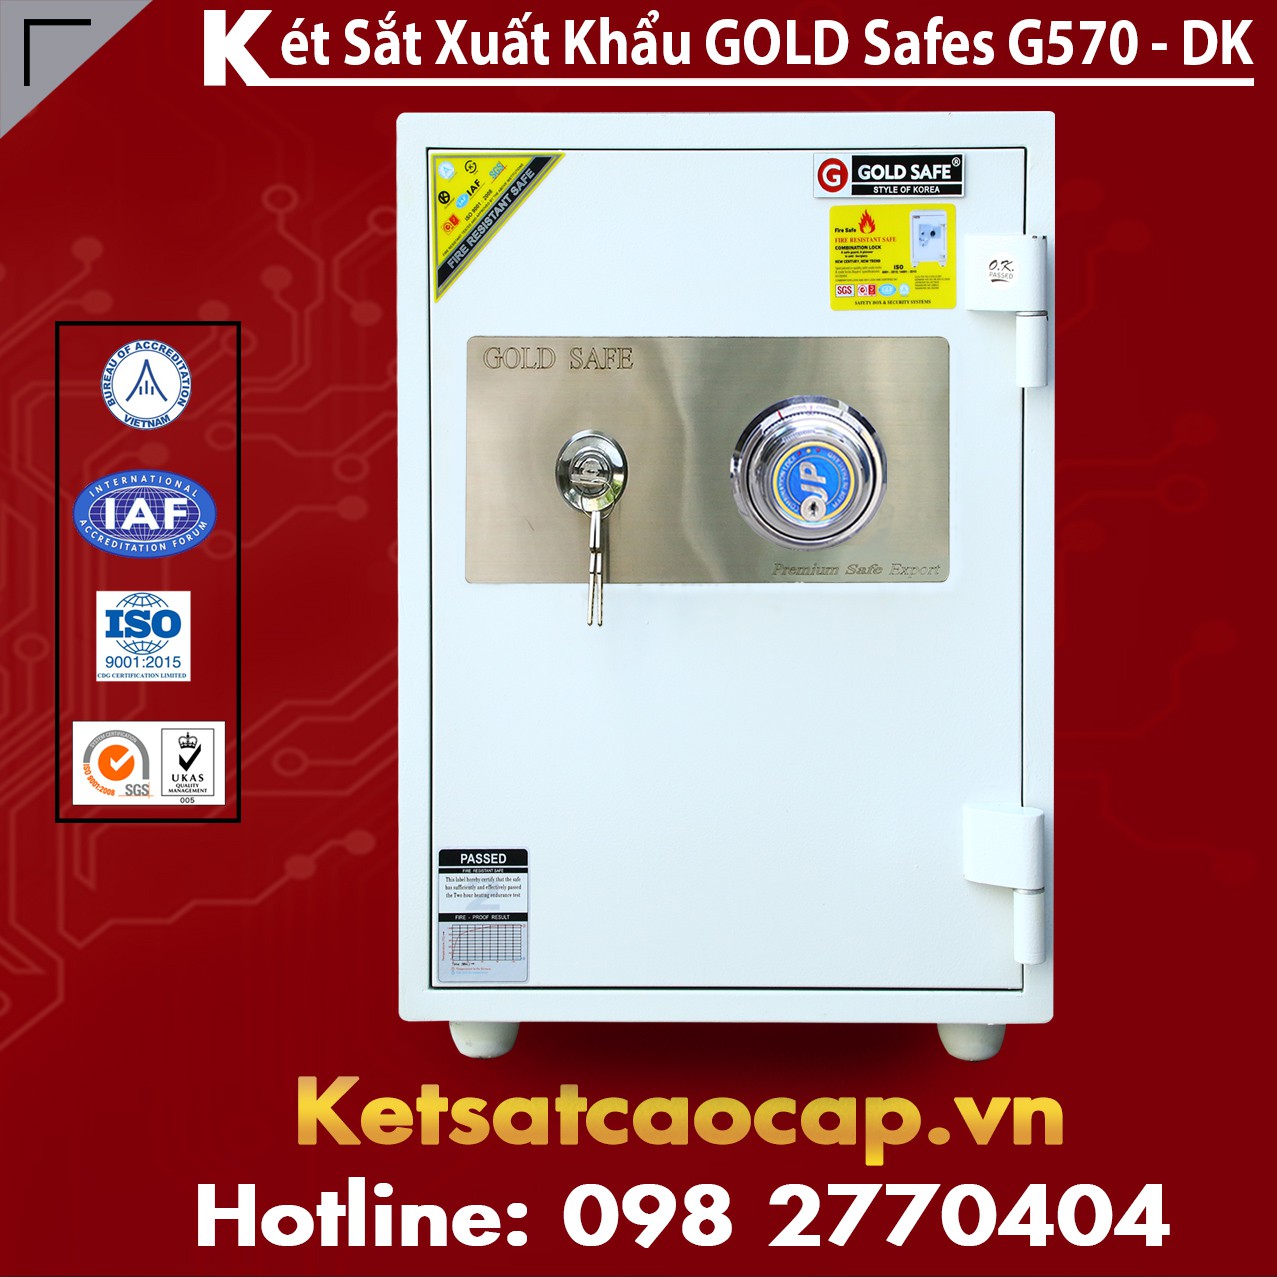 Két Sắt Phú Quý GOLD SAFES G570 DK